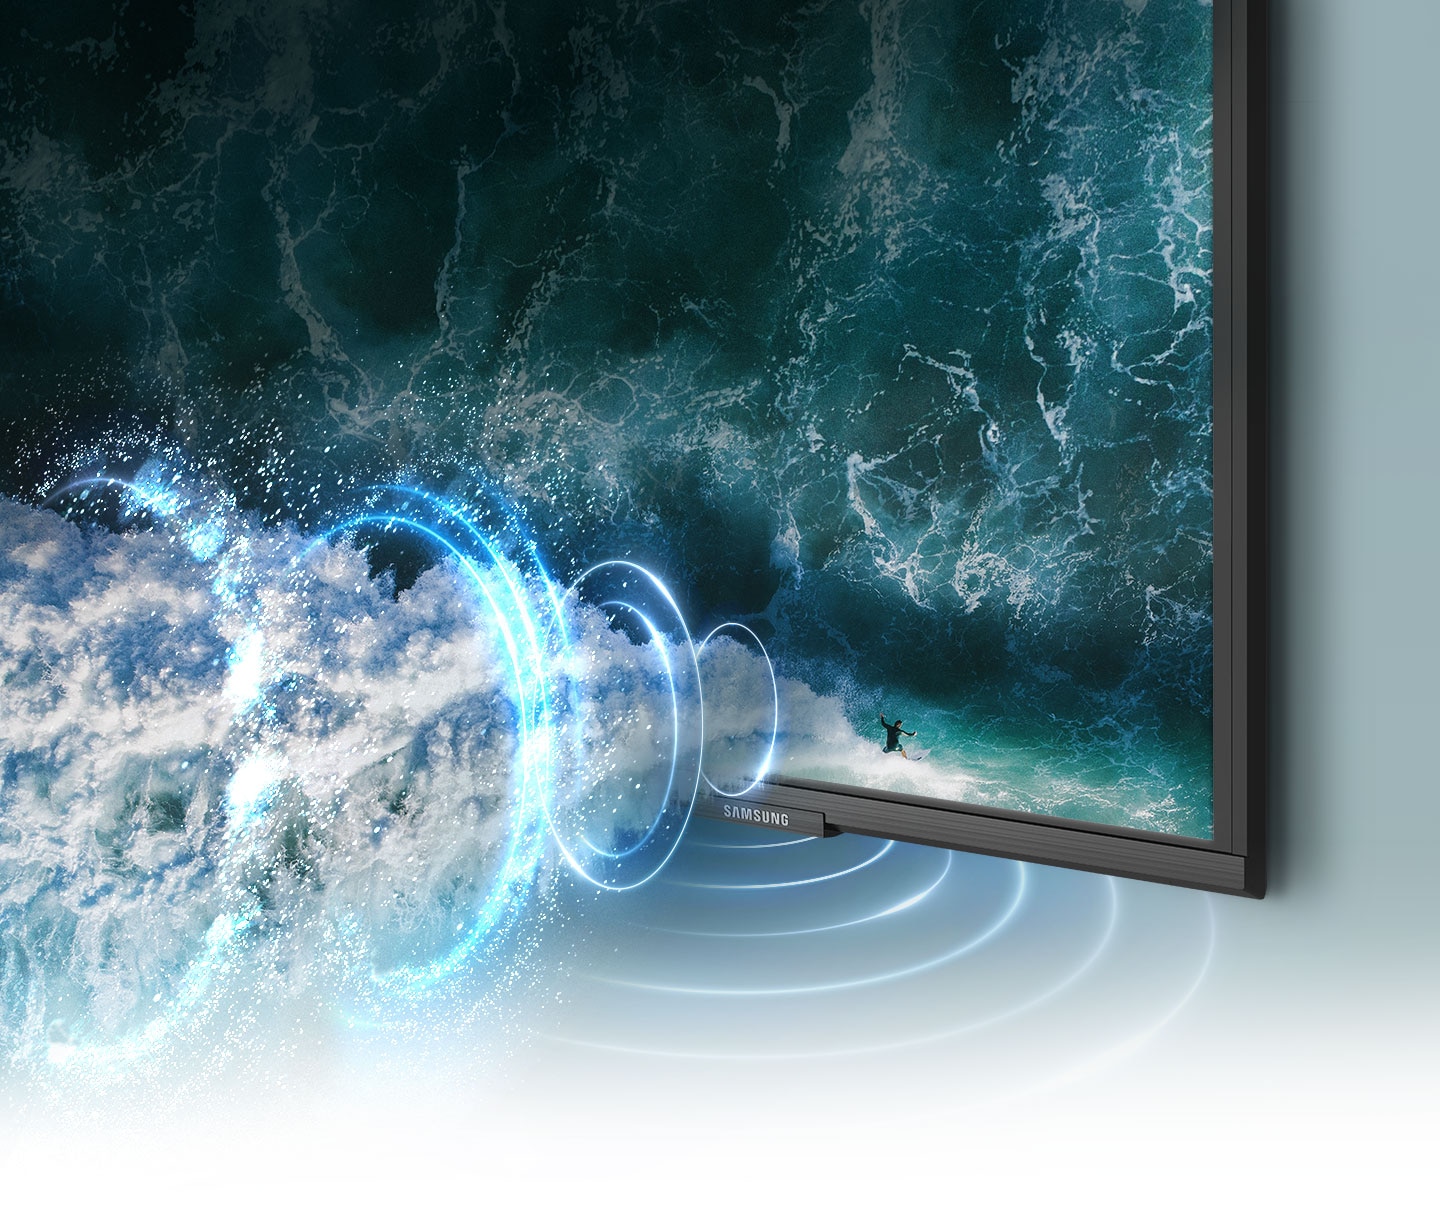 Los gráficos de ondas de sonido simuladas demuestran la tecnología de sonido de seguimiento de objetos mientras sigue a un surfista por la pantalla del televisor.